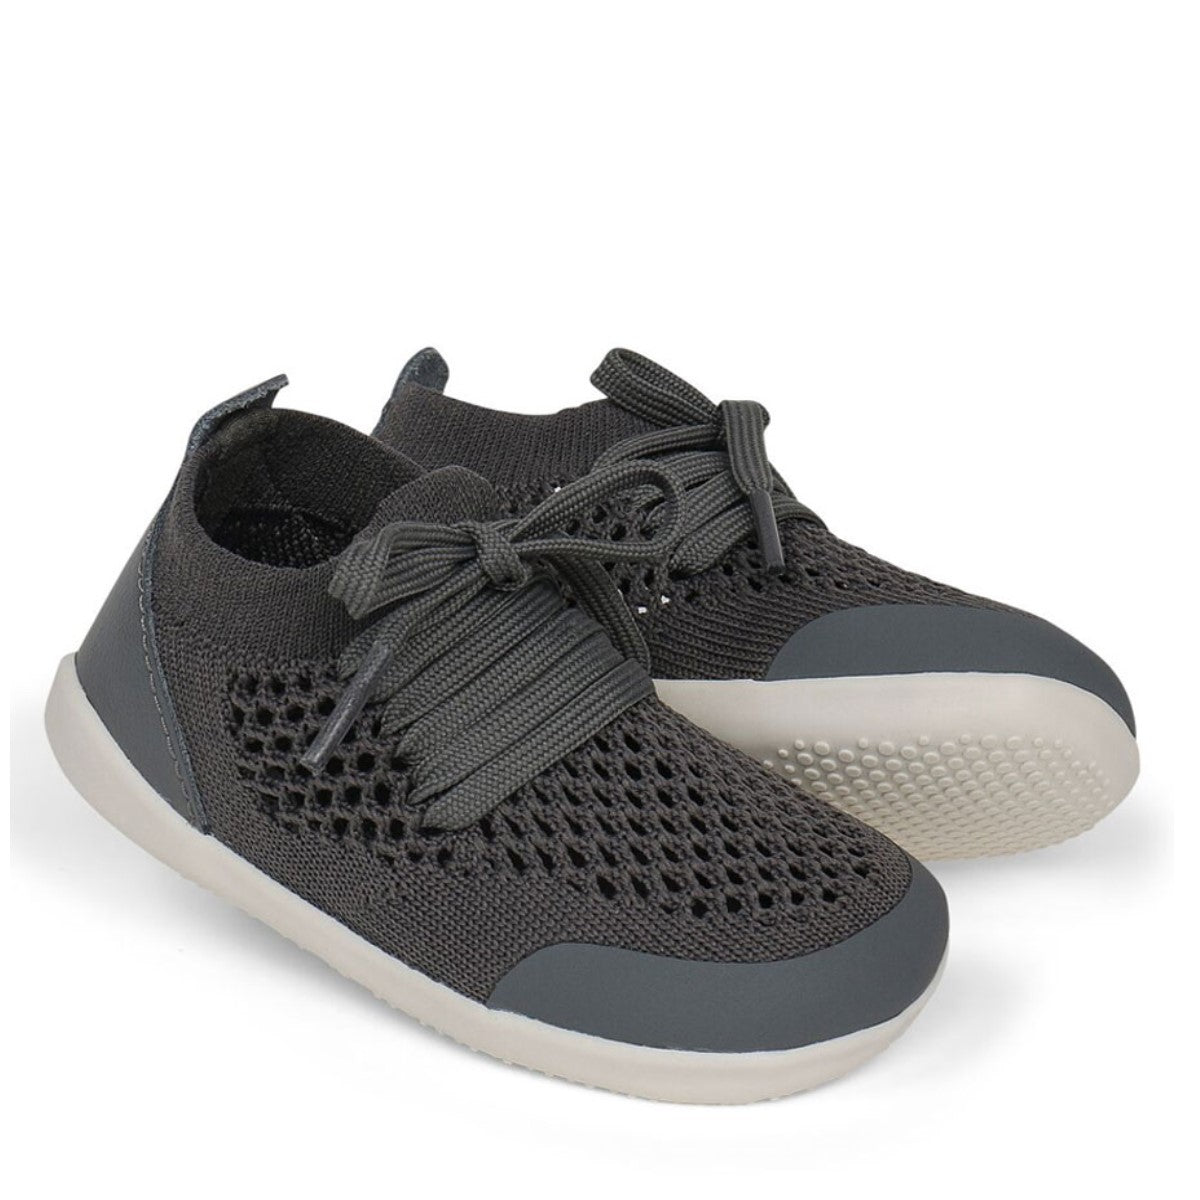 Xplorer Play Knit grigia | La sneaker super flessibile, leggera e ultra confortevole | 18-22